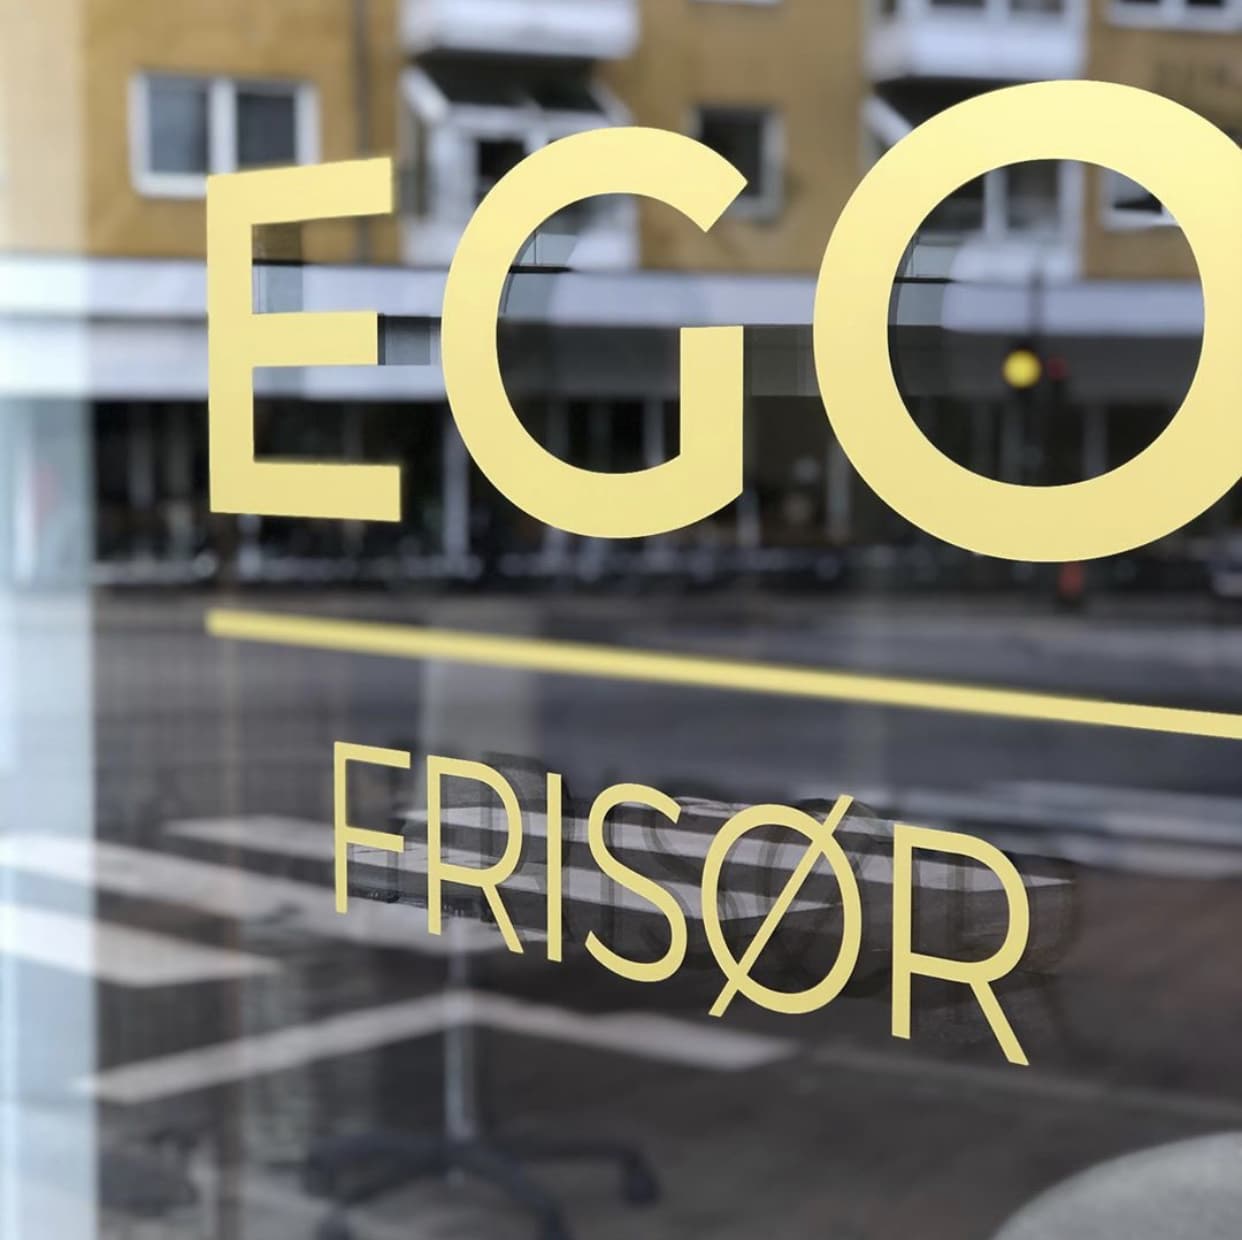 Frisør Ego | Frisør EGO Vanløse søger endnu en dygtig frisør